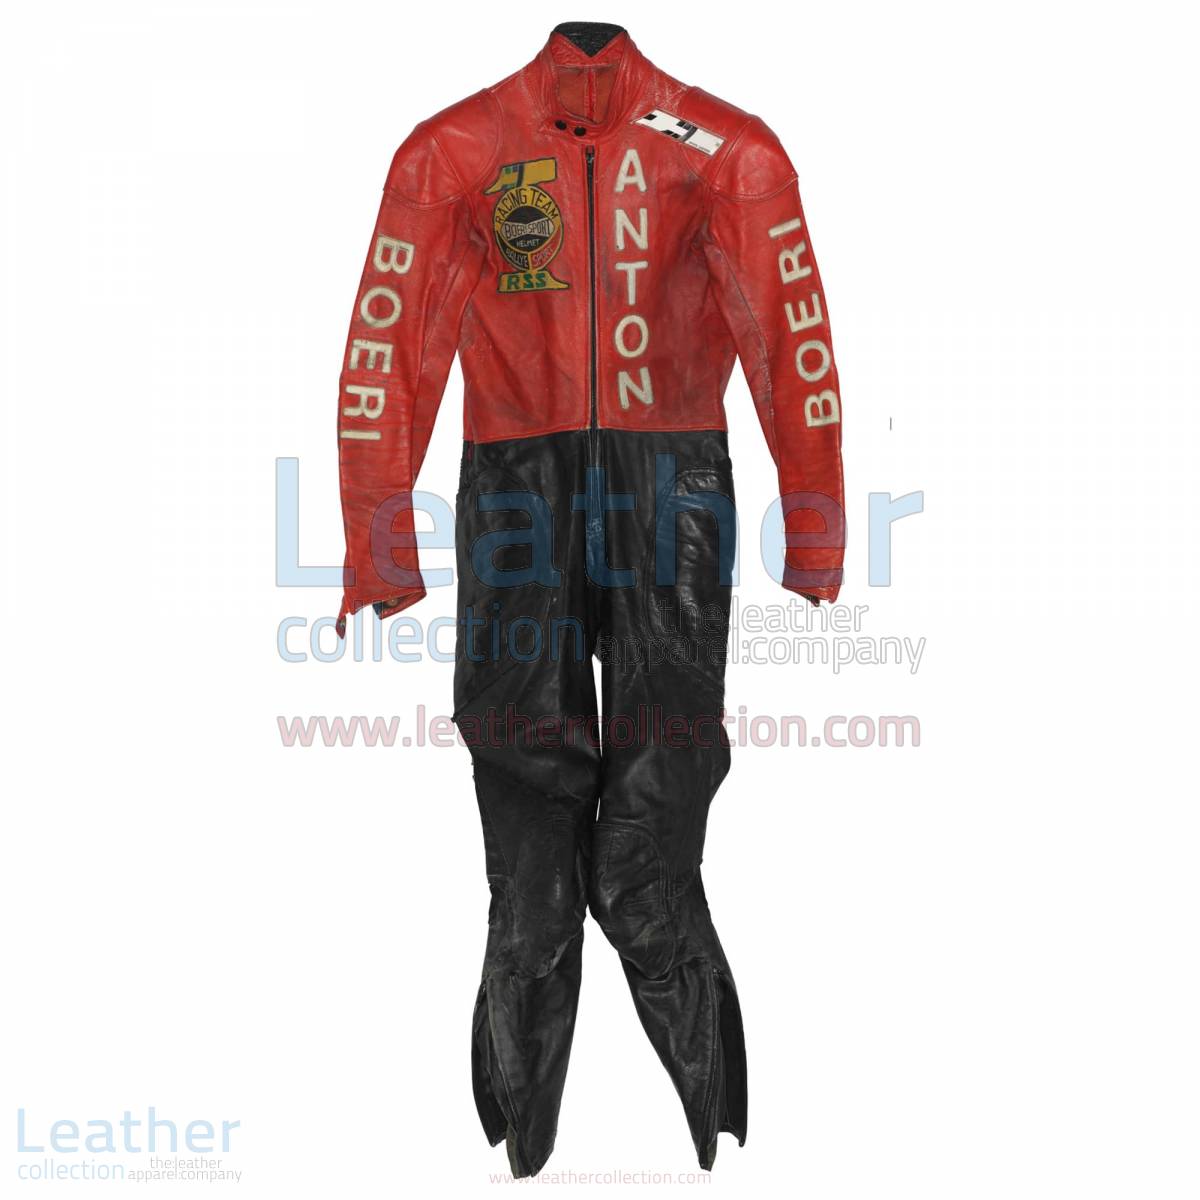 Toni Mang Kawasaki GP 1980 Racing Suit